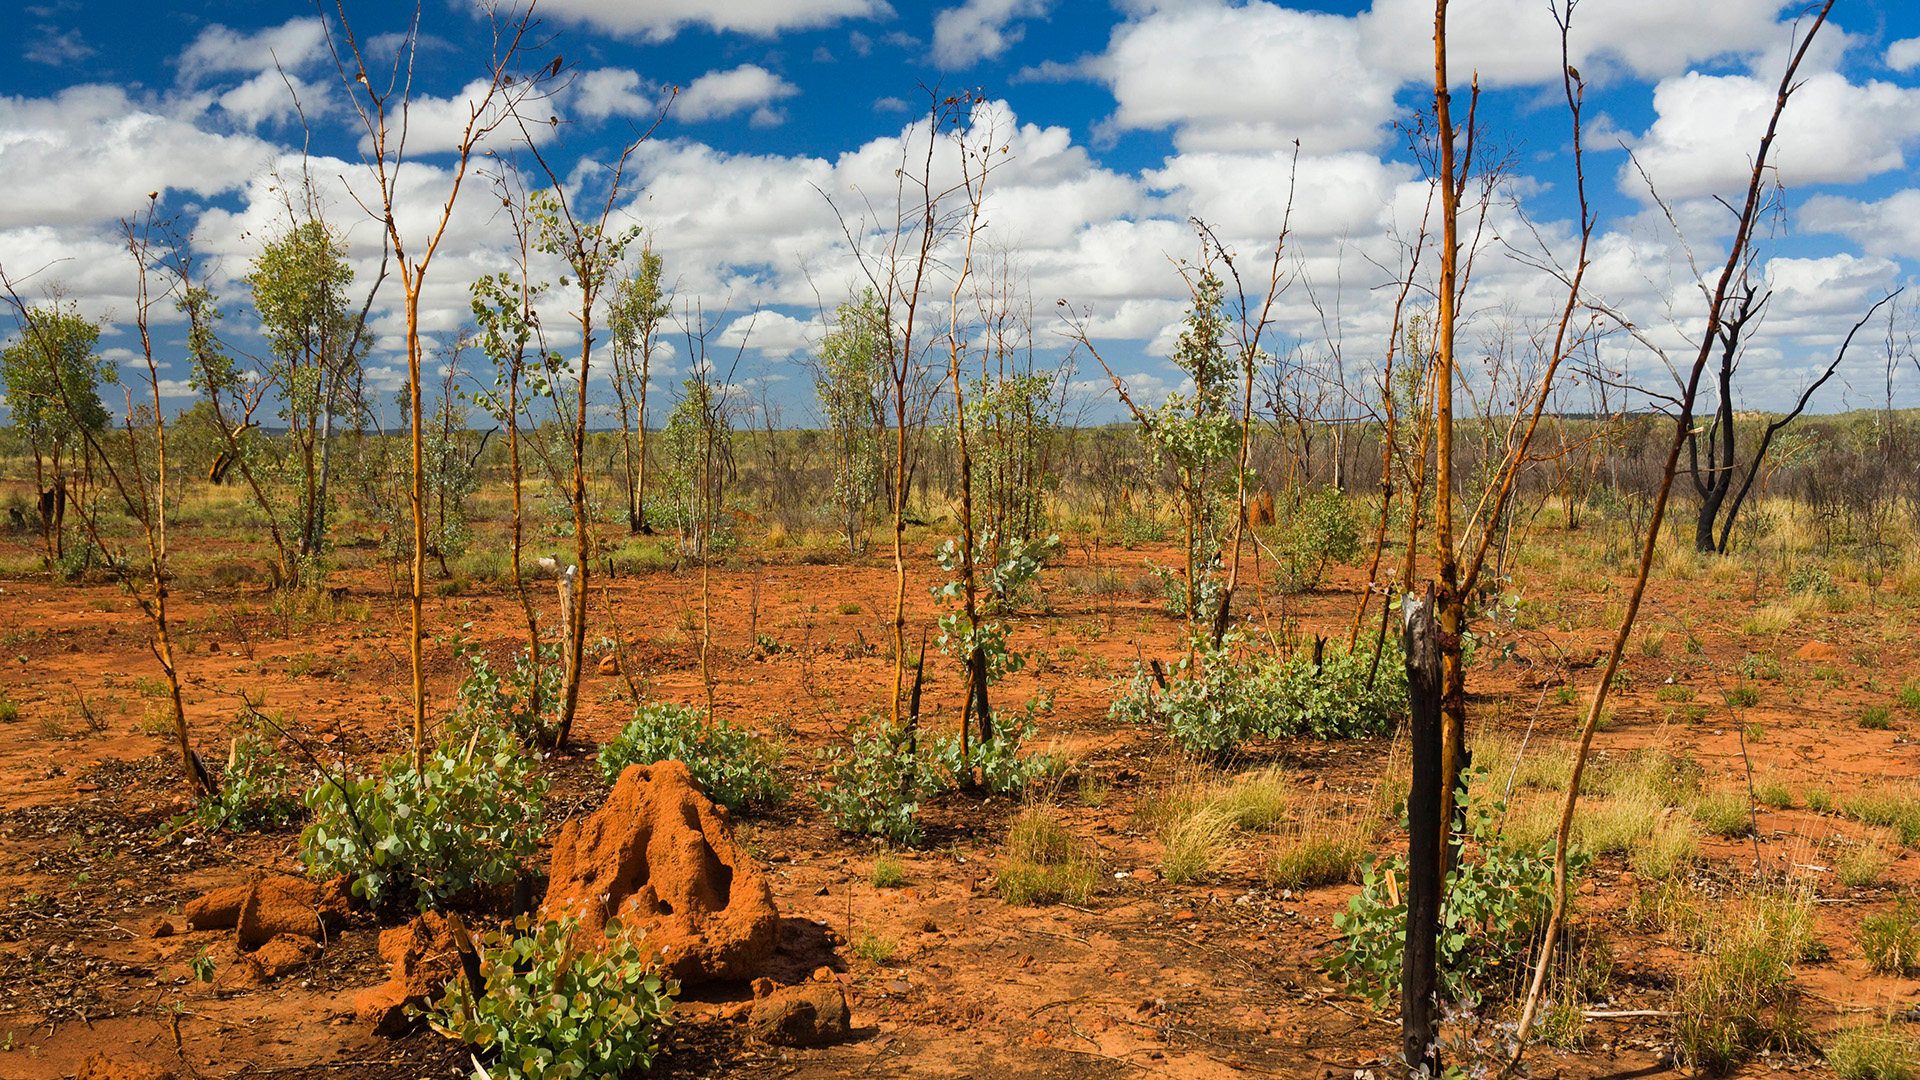 Termitenhügel im Outback von Queensland, Australien | picture alliance / Jochen Schlen